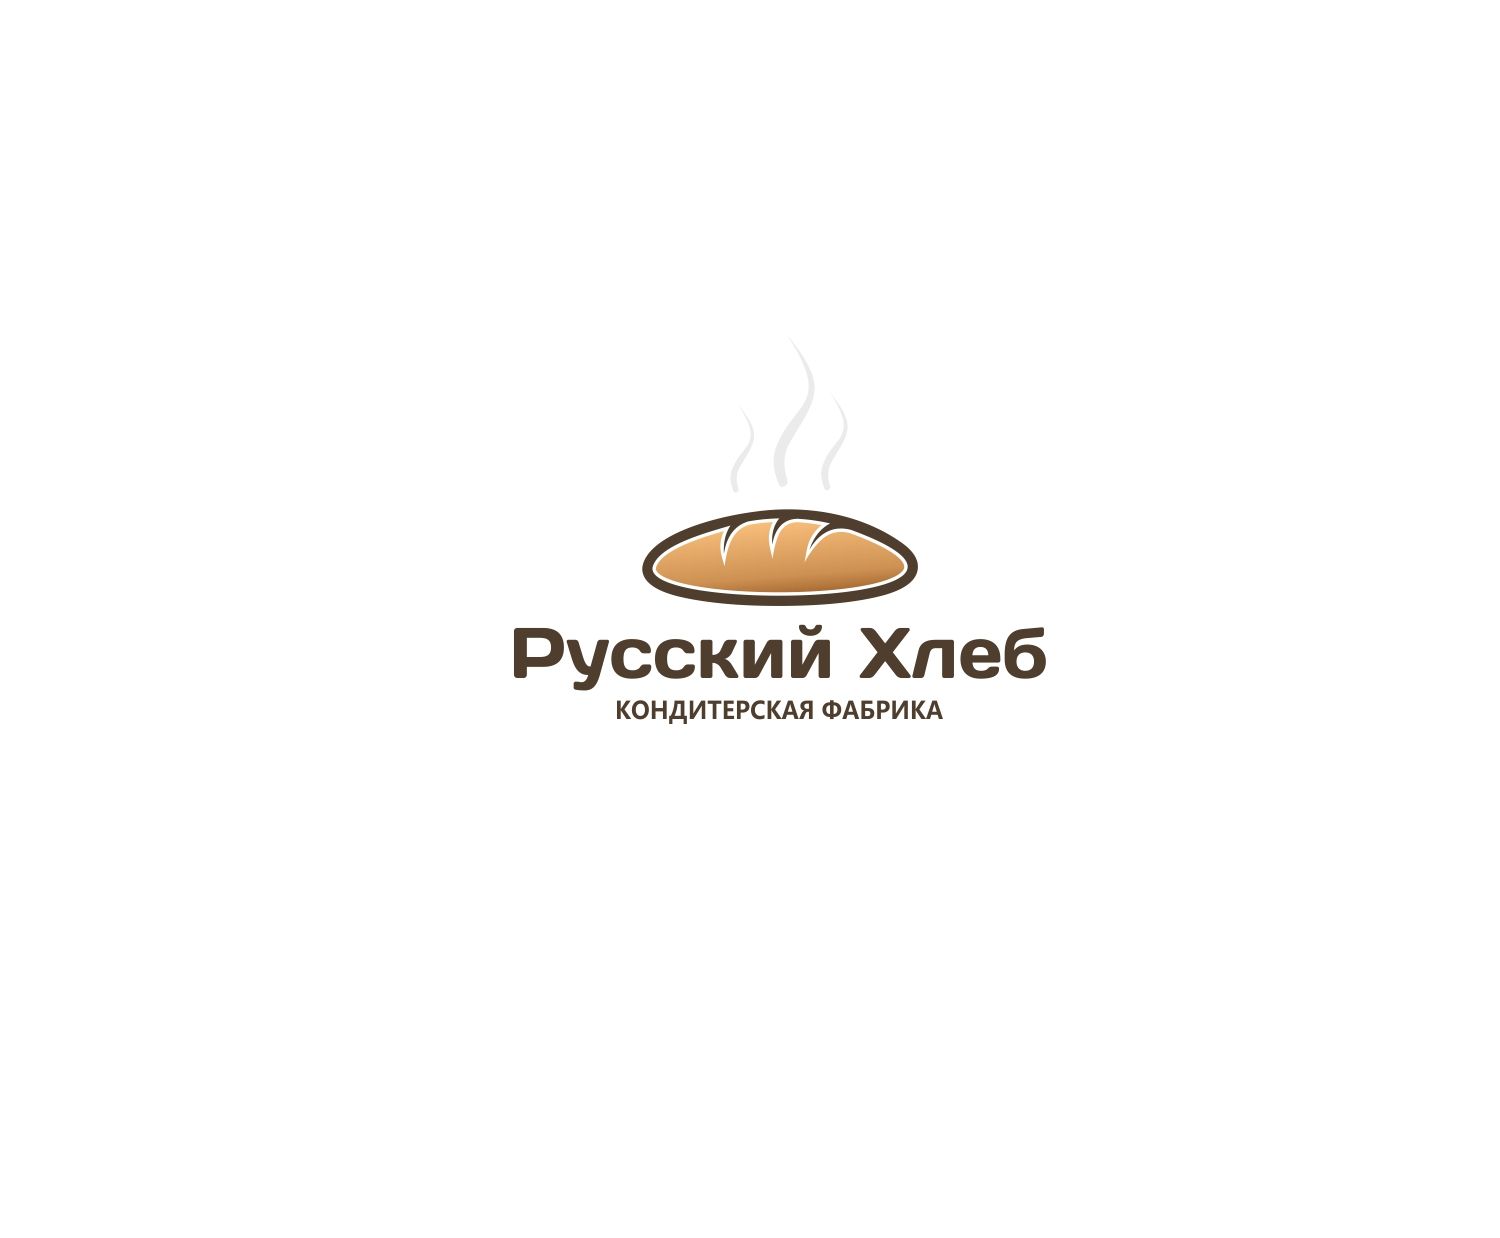 Лого и фирменный стиль для Русский хлеб  - дизайнер anstep